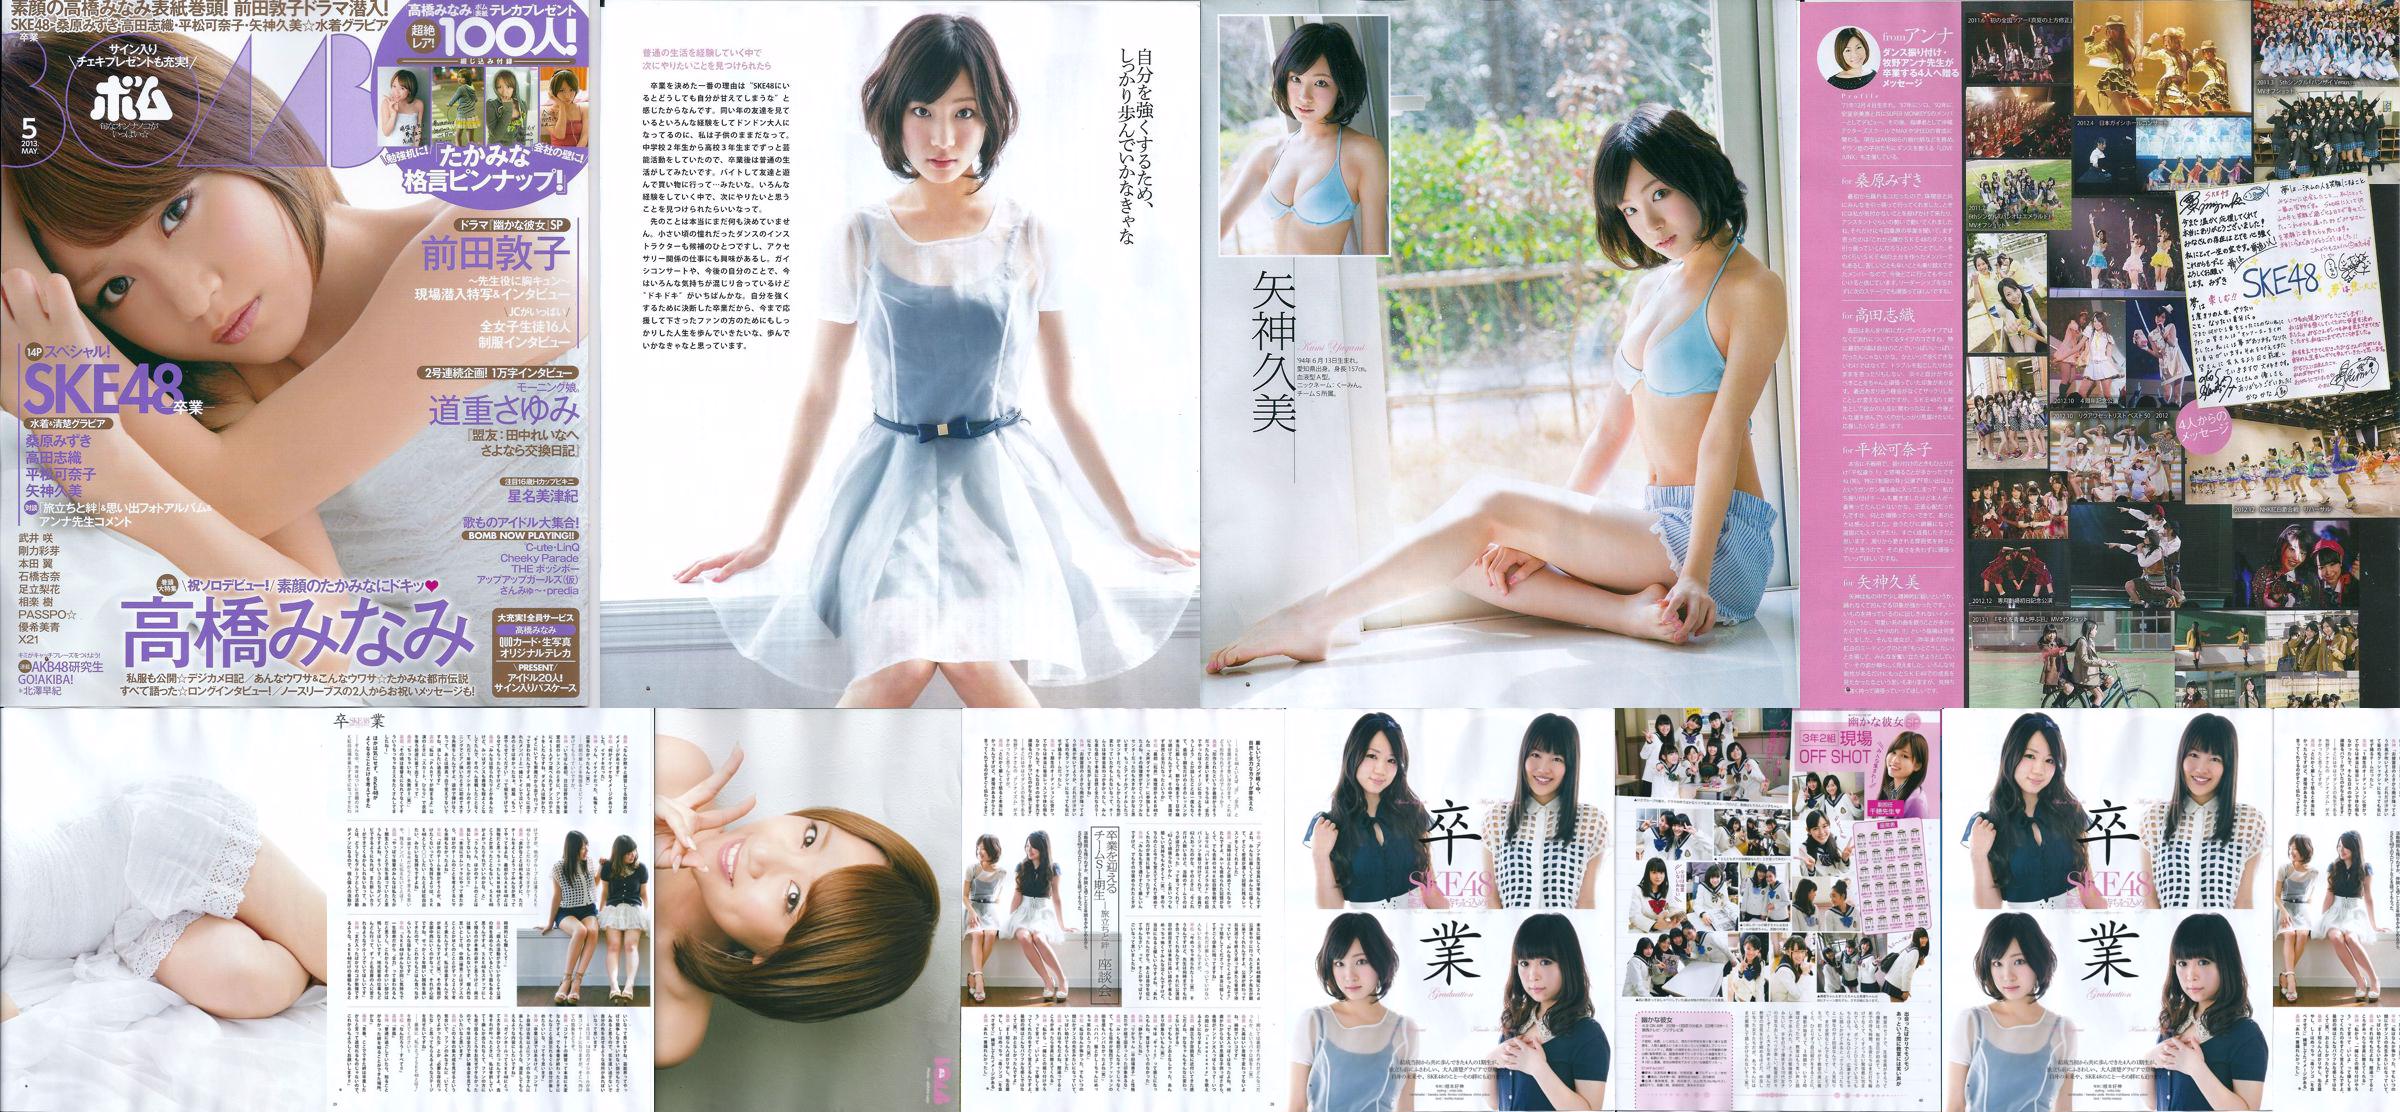 [Bomb Magazine] 2013 No.05 Kumi Yagami Minami Takahashi Atsuko Maeda Photo No.3aaf9b Pagina 2